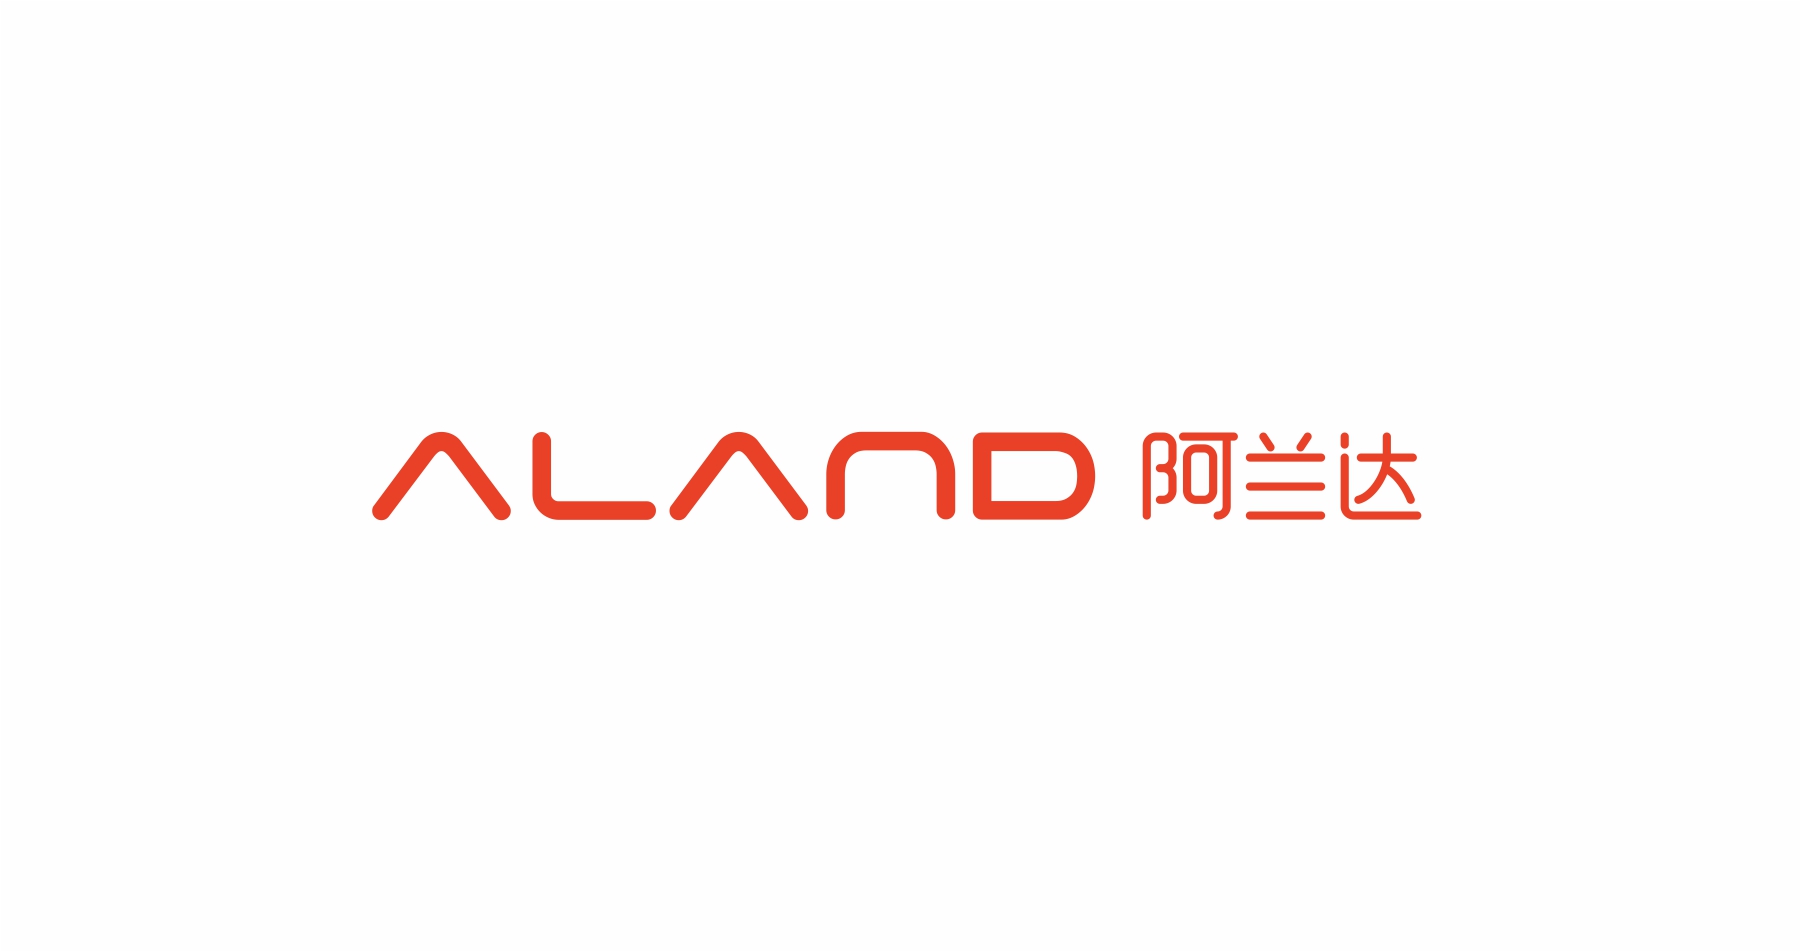 阿兰达平衡车品牌策划设计logo组合形式